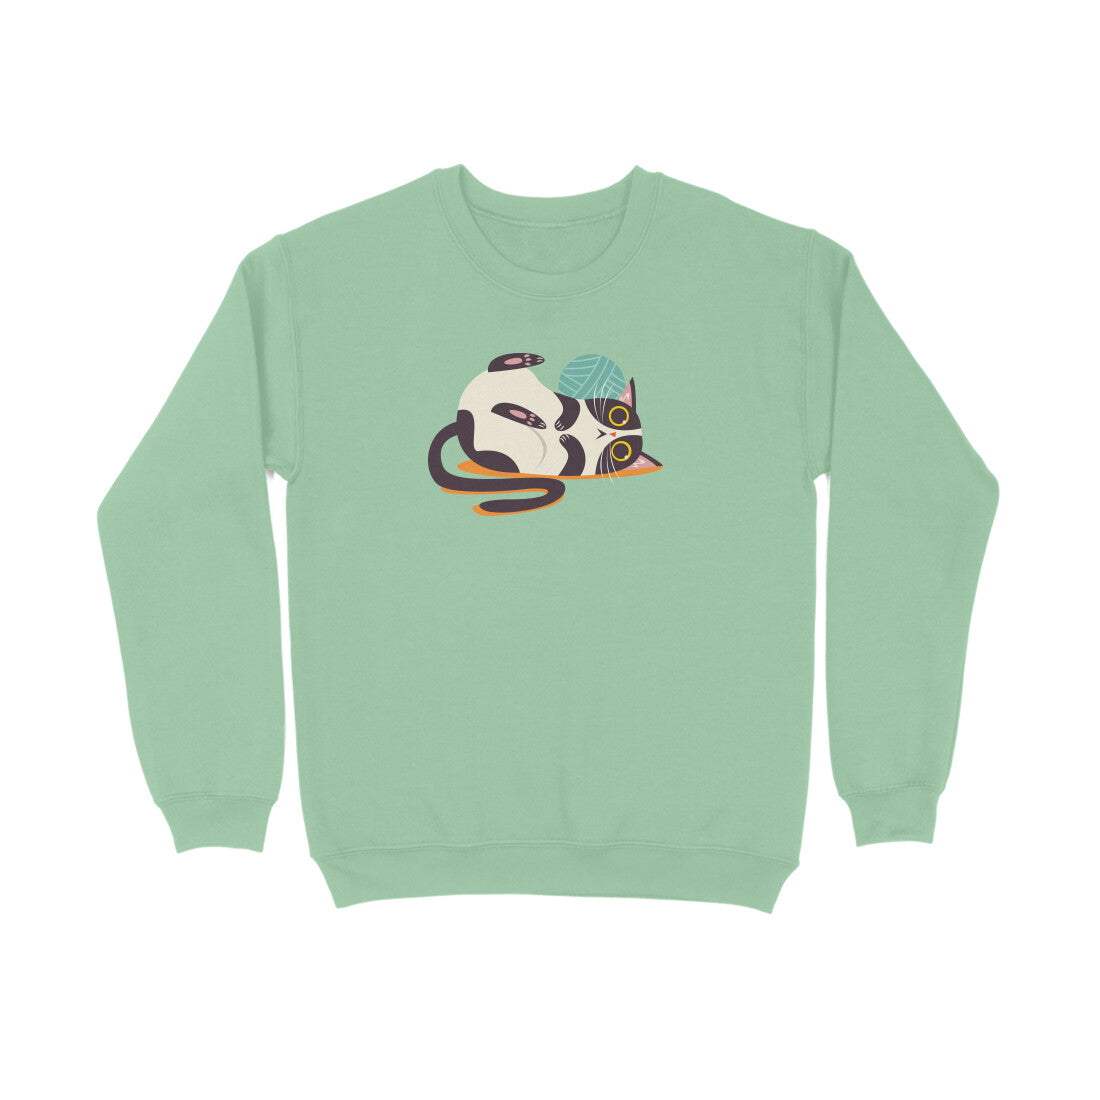 Stepevoli Clothing - Sweatshirt (Unisex) - Clawful Nap (7 Colours)